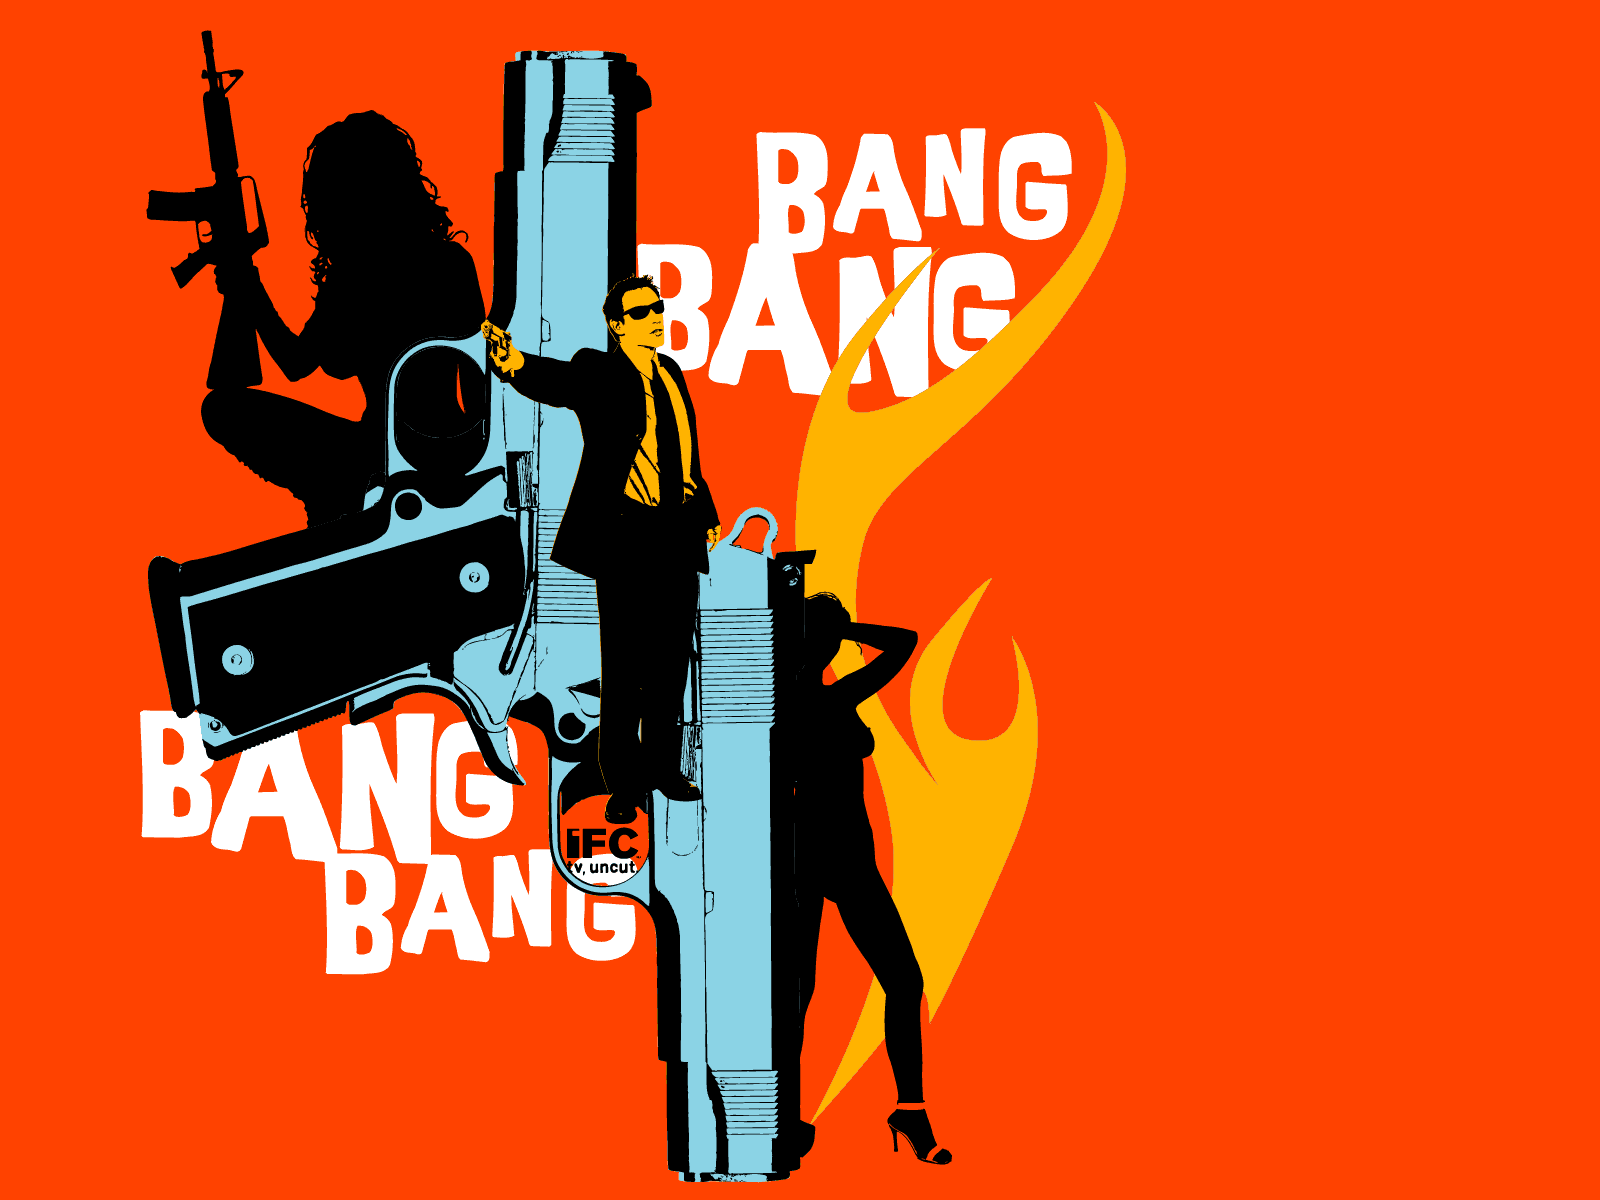 Blink bang bang. Bang. Ban ban. G-ba. Bang картинка.